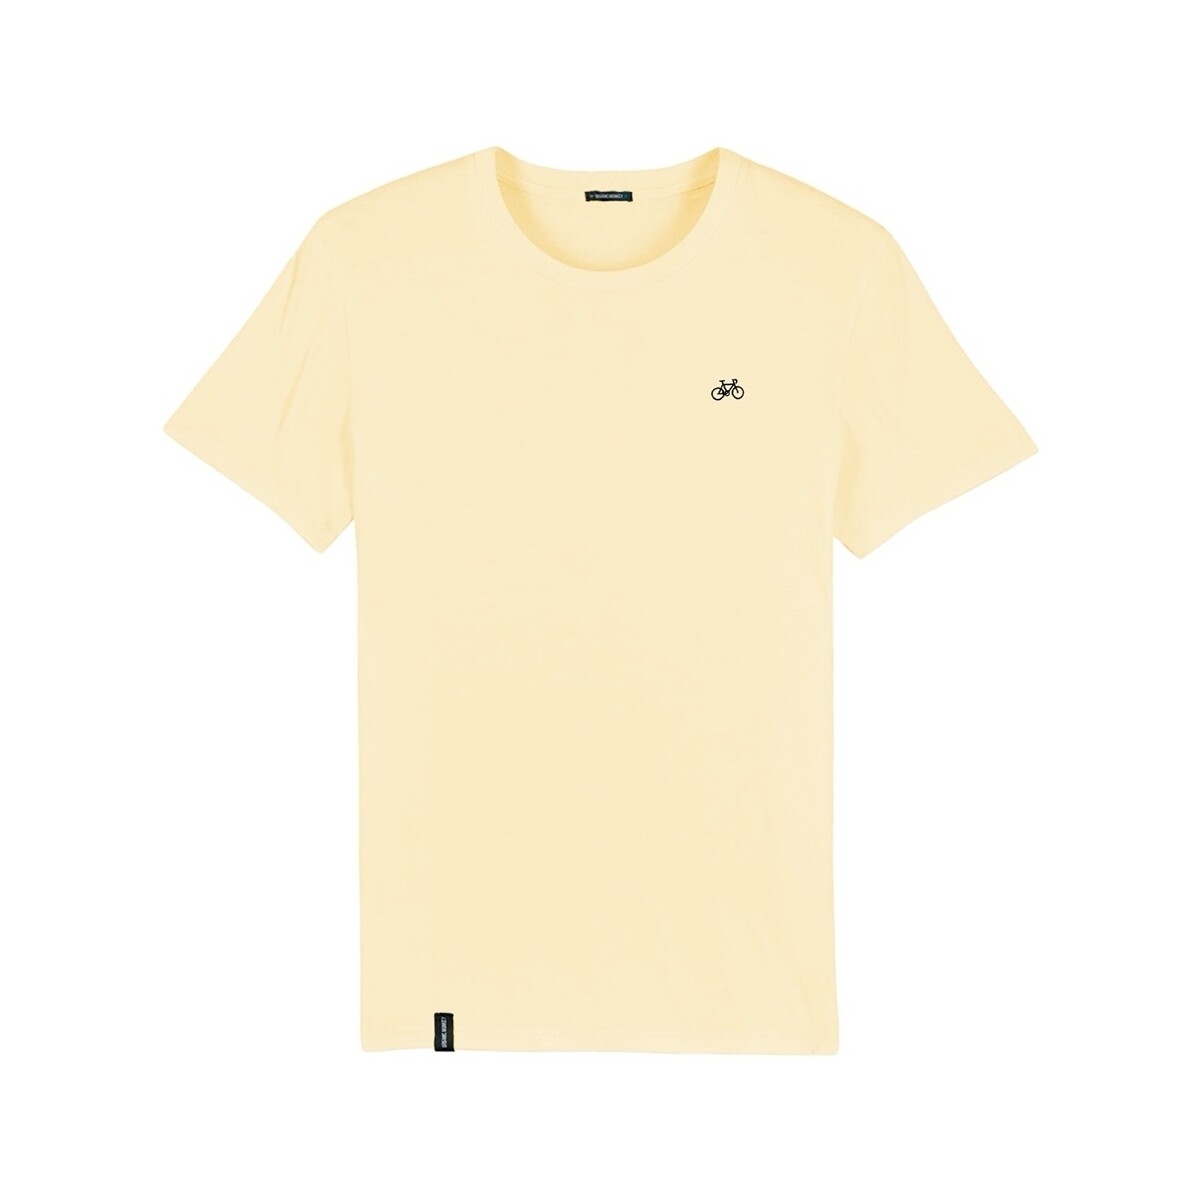 Îmbracaminte Bărbați Tricouri & Tricouri Polo Organic Monkey T-Shirt Dutch Car - Yellow galben